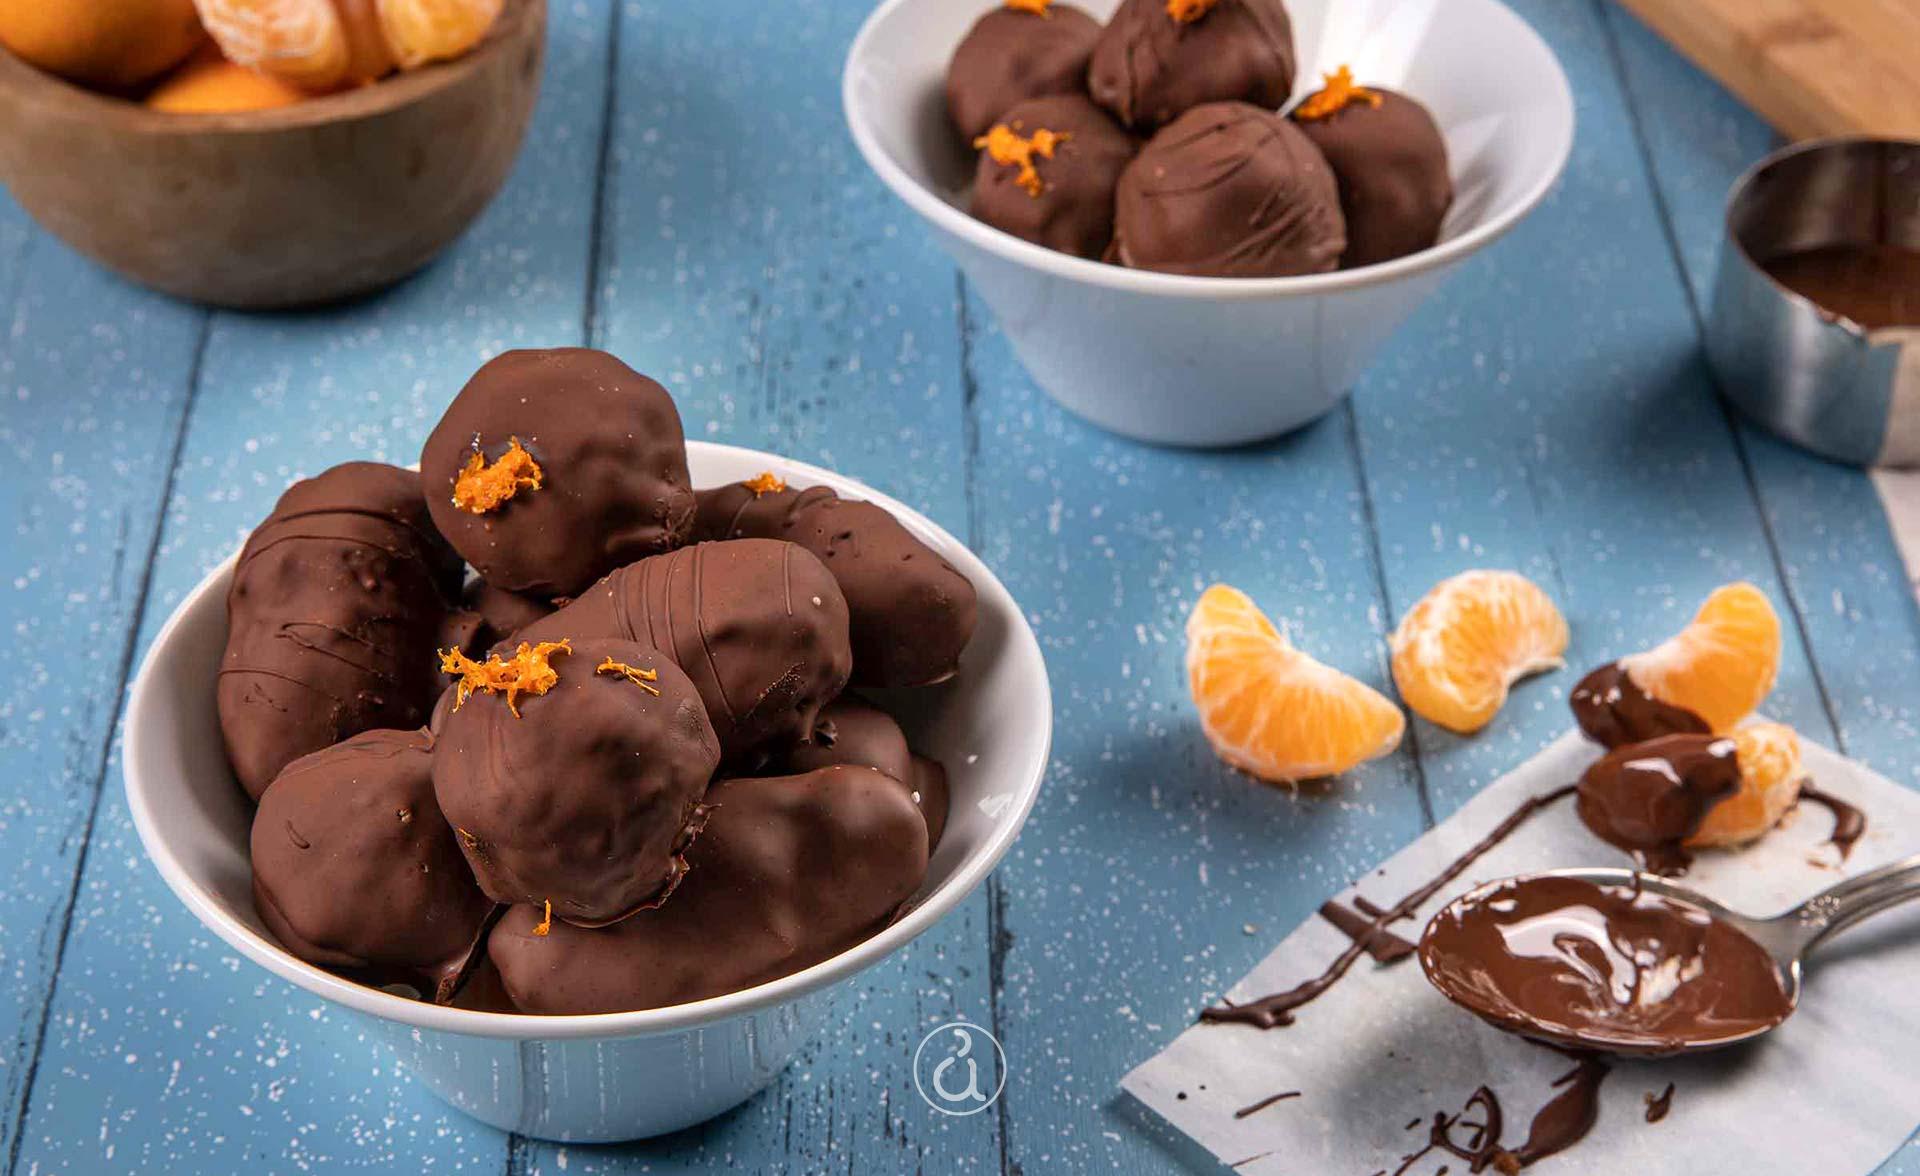 σοκολατάκια με μανταρίνι - σοκολατάκια μανταρίνι - σοκολατάκια με καρύδια - σοκολατάκια μανταρίνι ιδιαίτερη - γλυκό - γλυκά